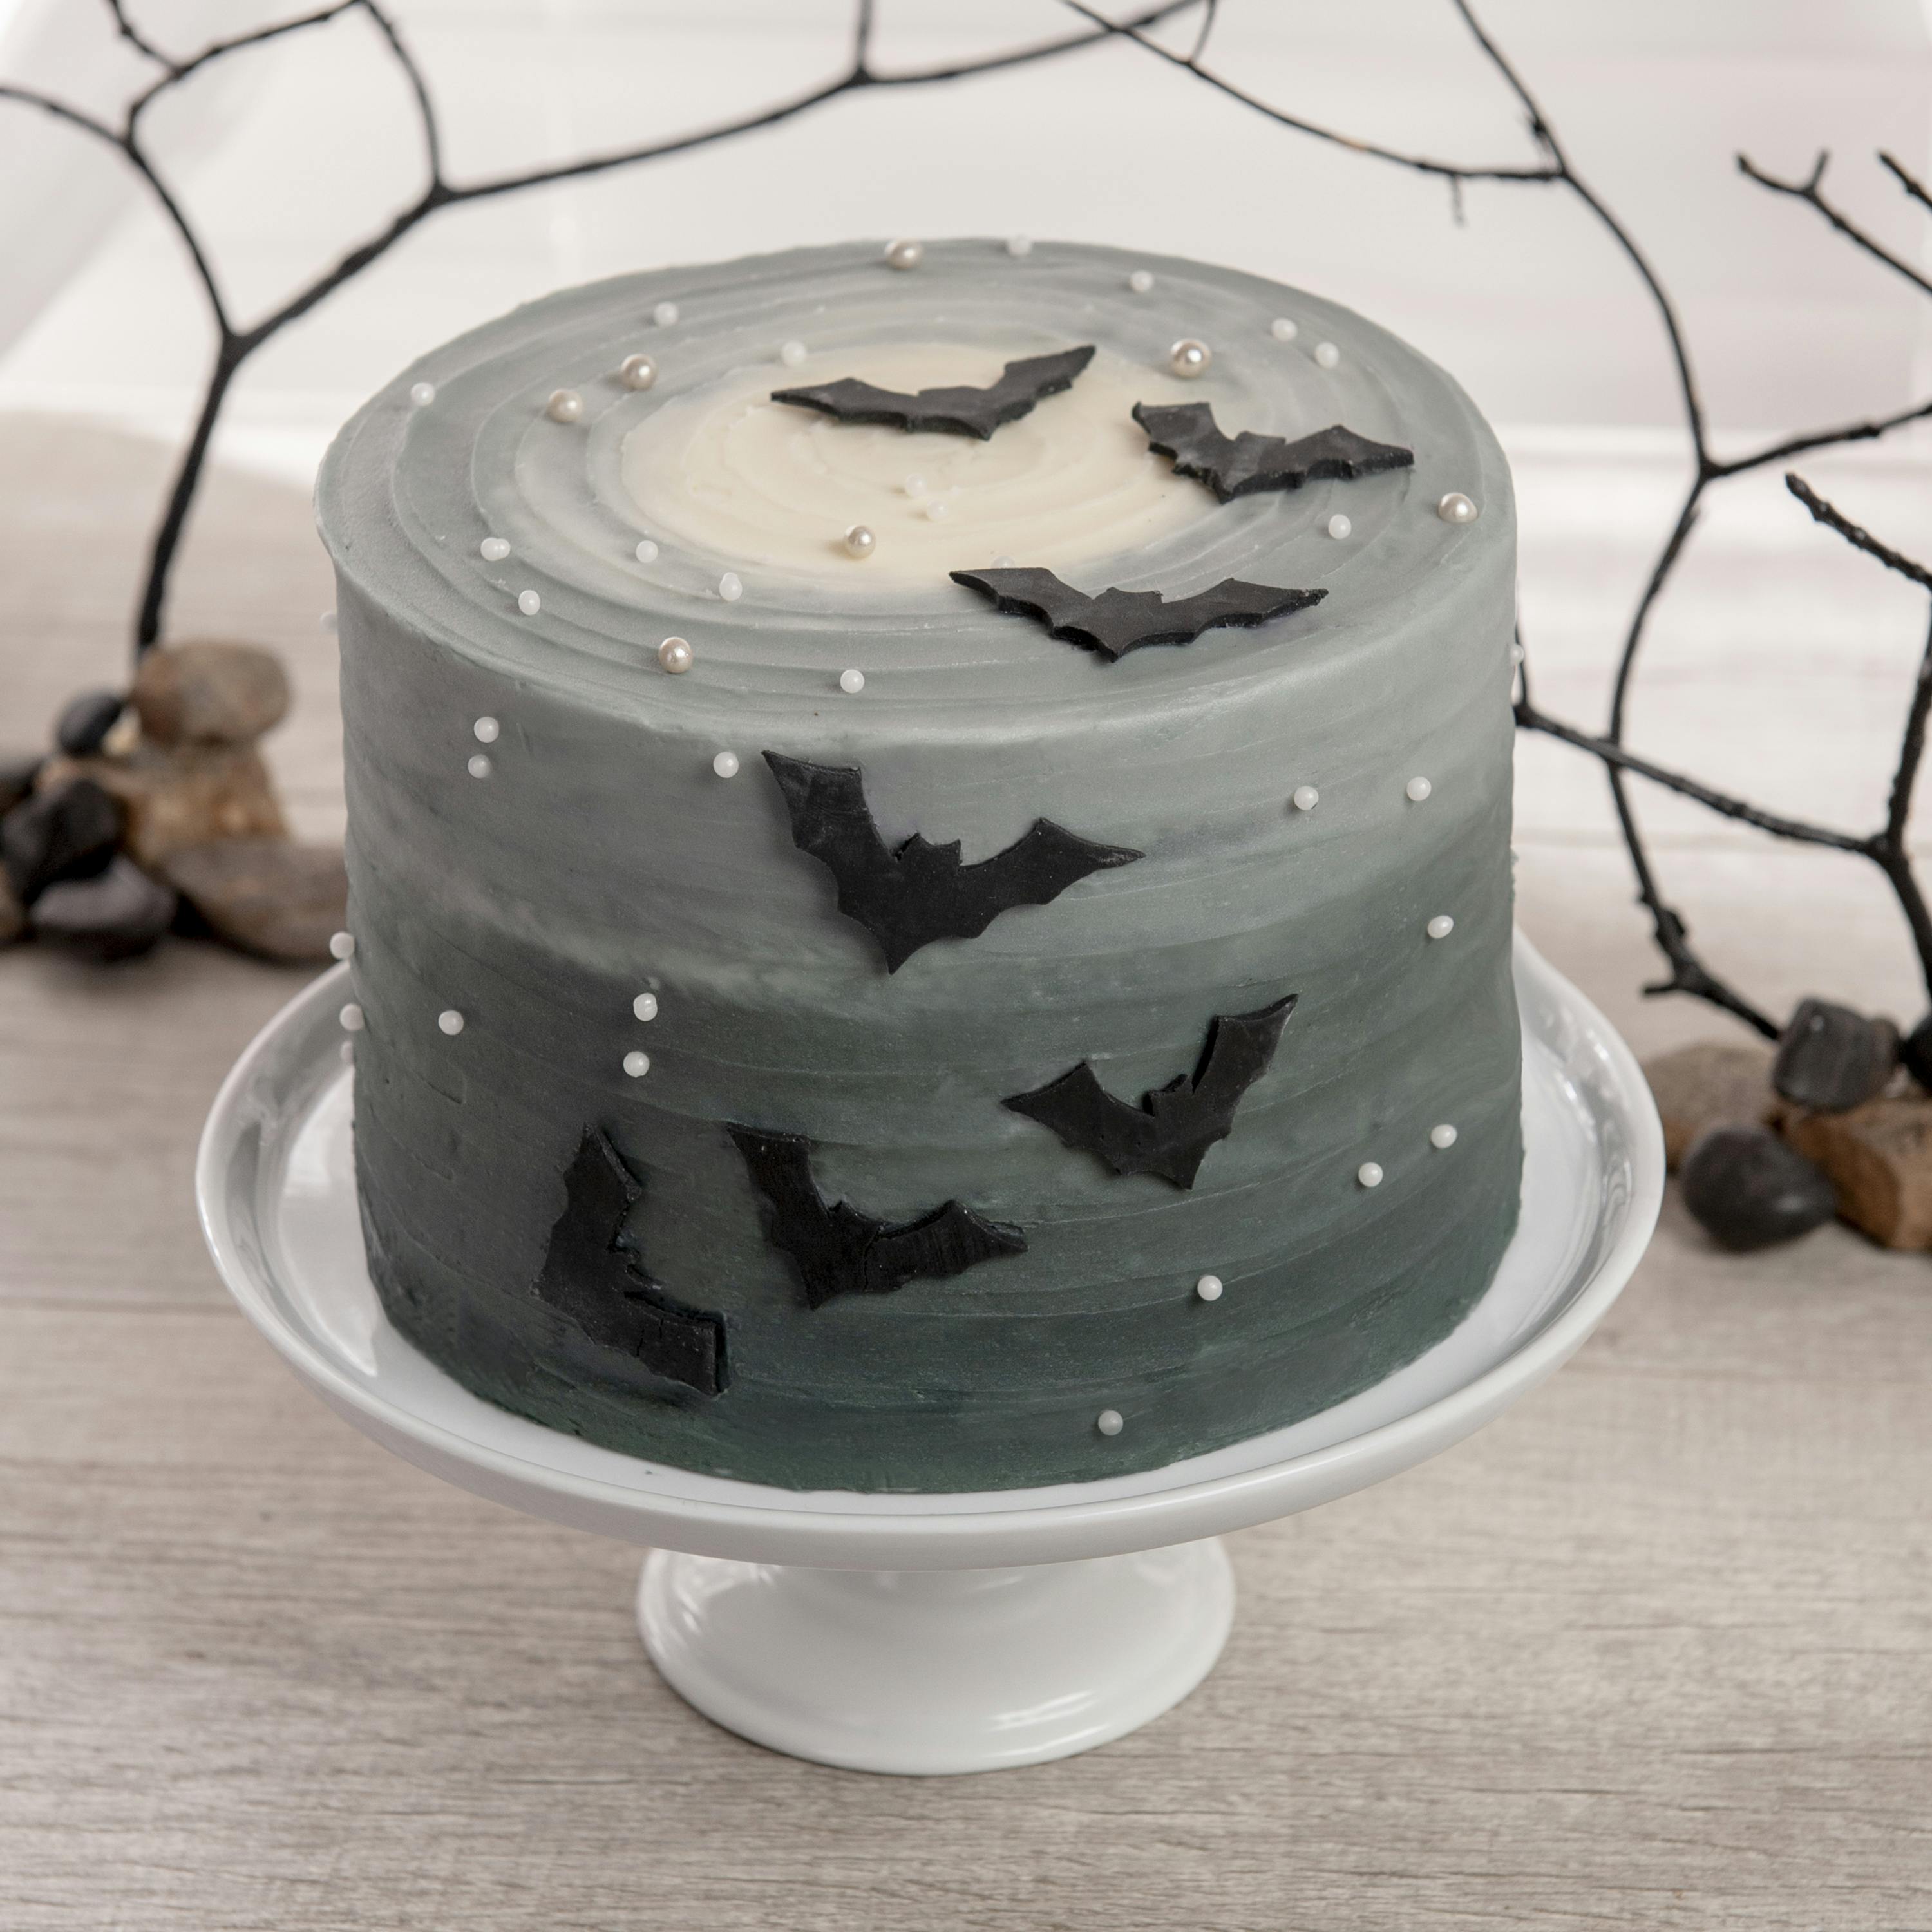 Bat Cake - Preppy Kitchen